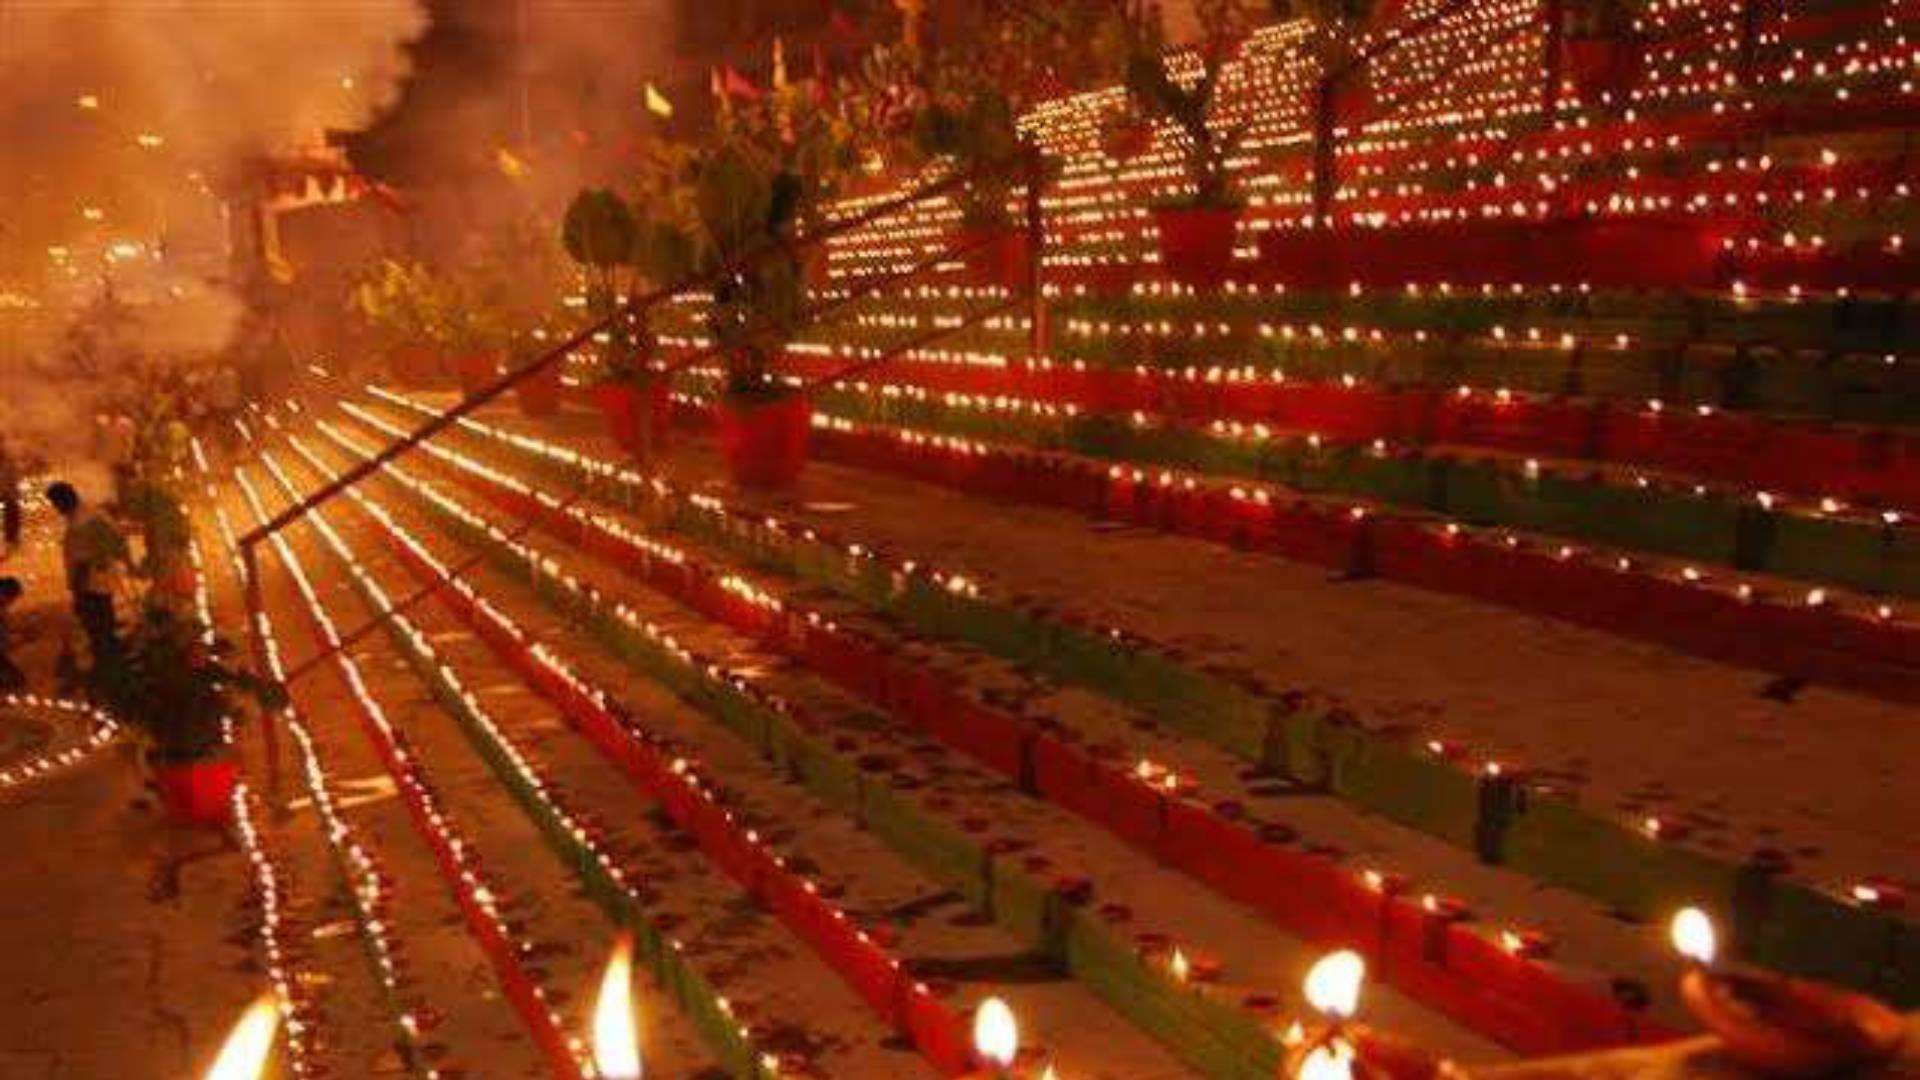 Kartik purnima 2020: देवों की ​दीपावली है कार्तिक पूर्णिमा, जानिए पूजा का शुभ मुहूर्त